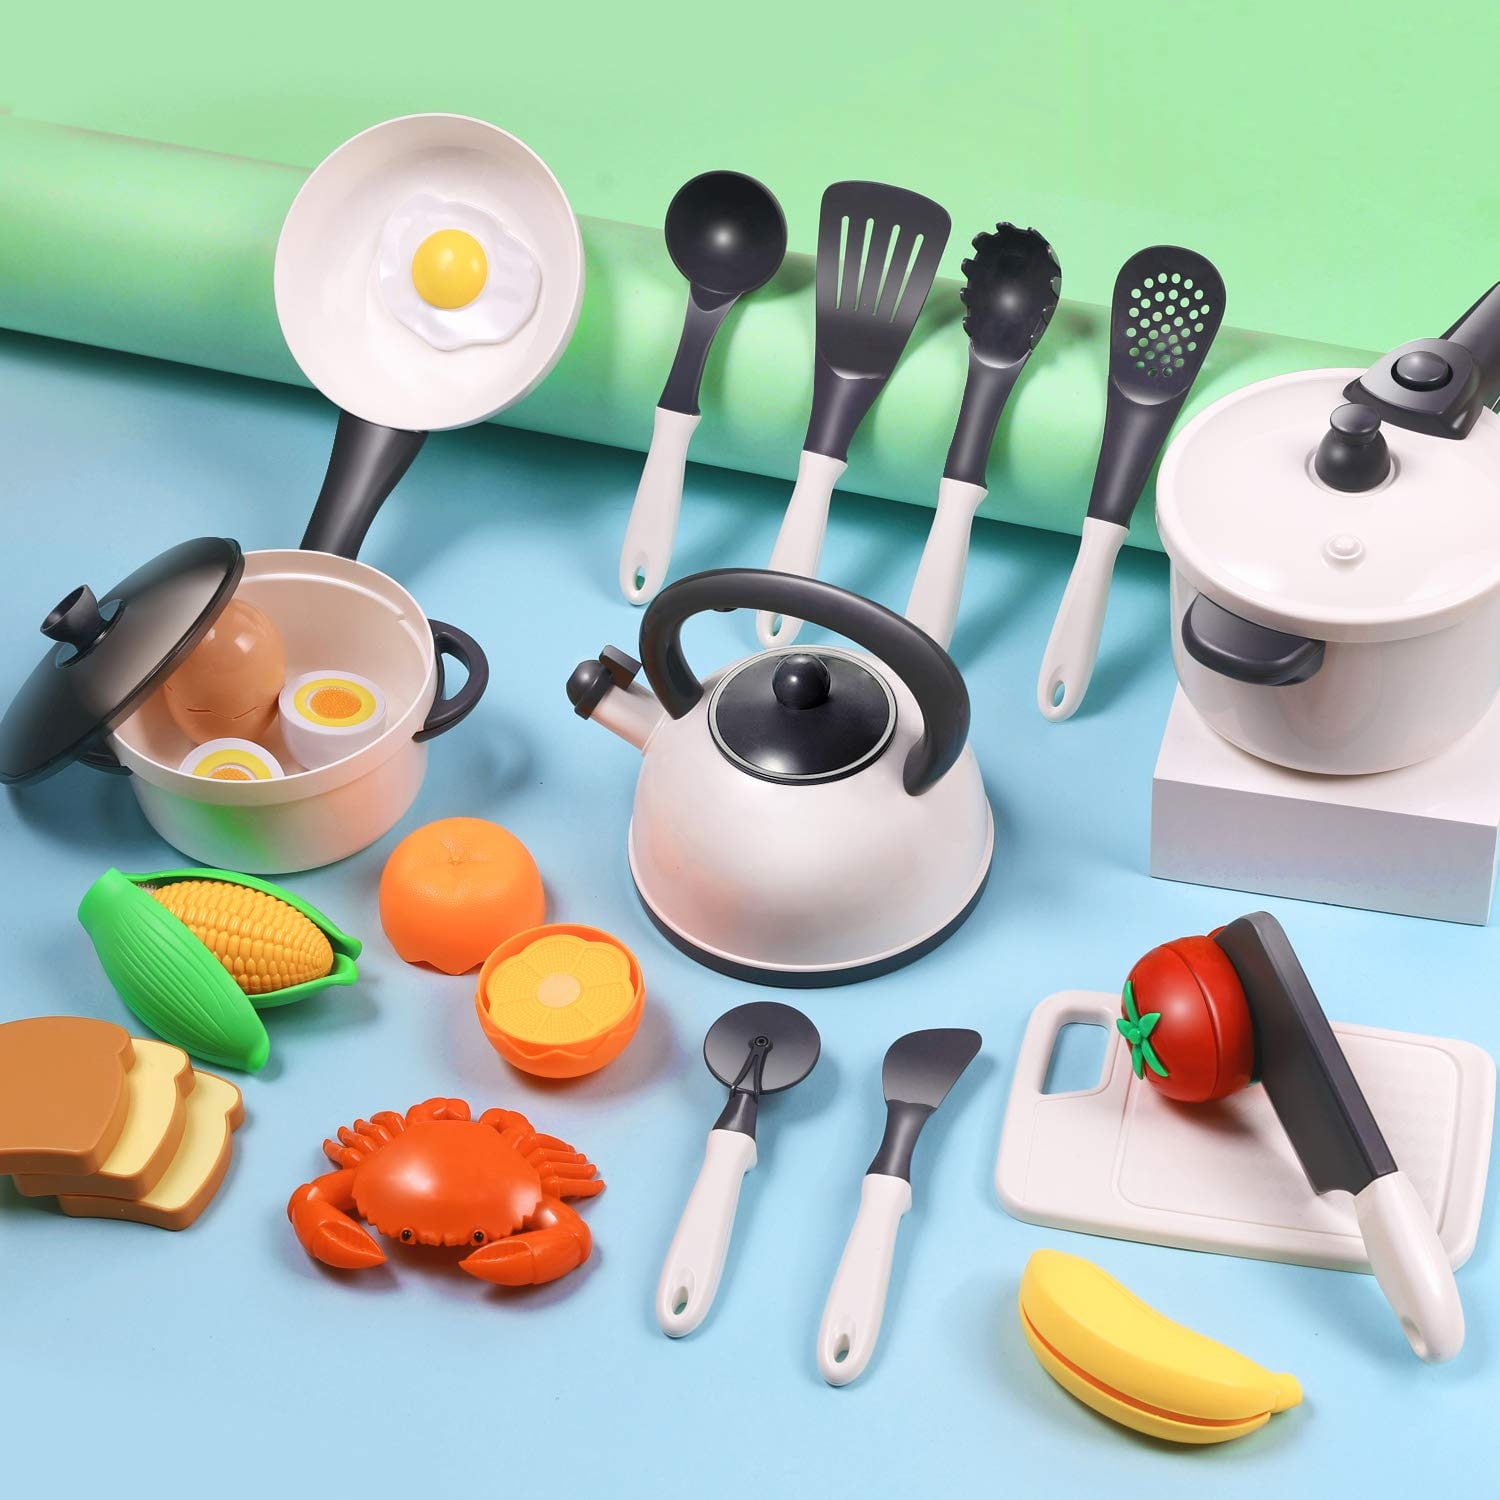 Childrens Plastic Kitchen Cooking Utensils Pots Pans Accessories Set Kids YNW 